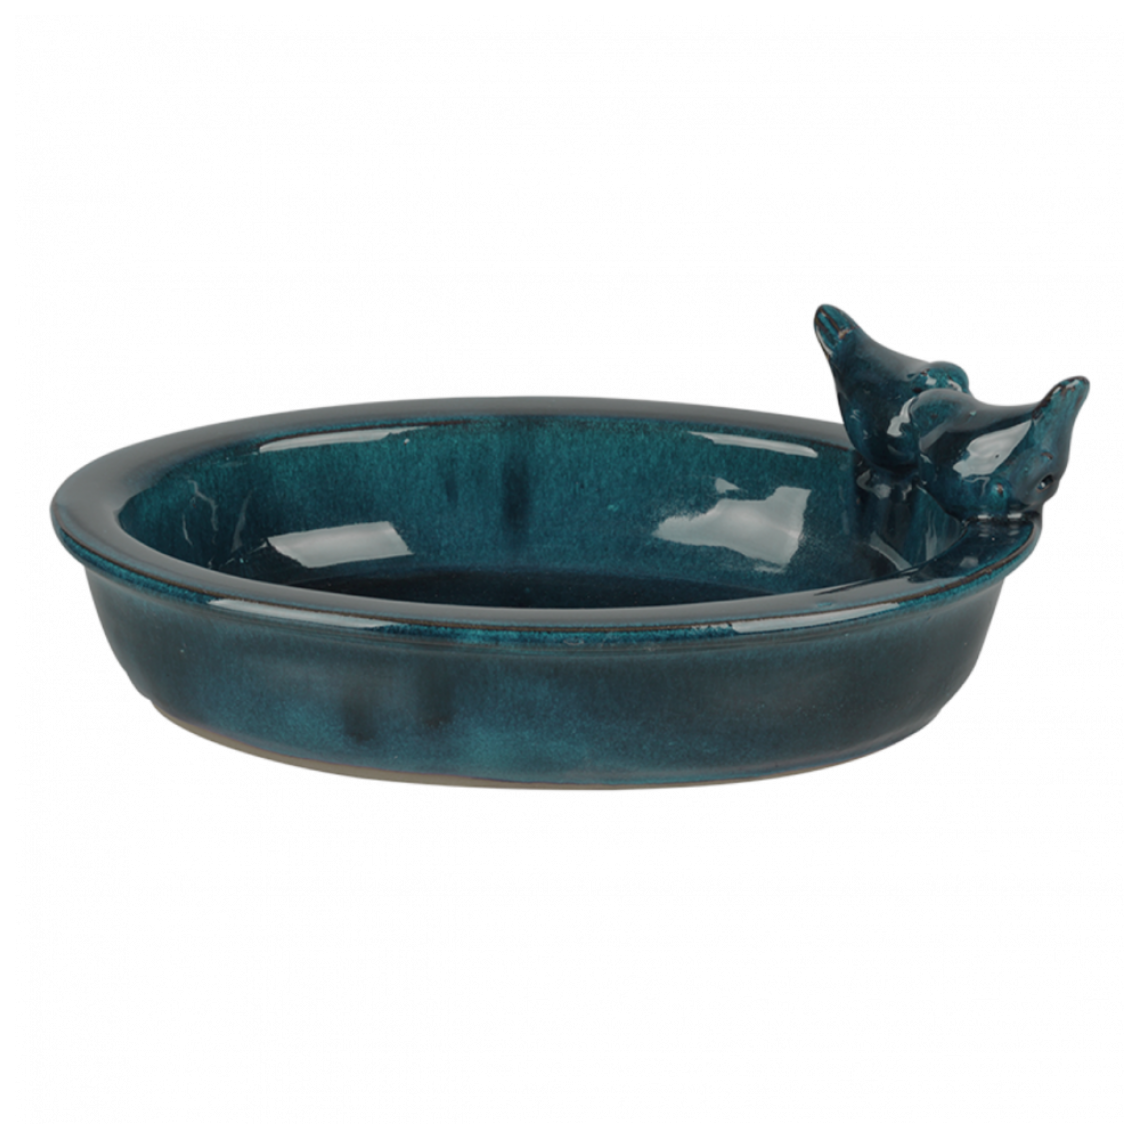 Ac-Deco - Bain d'oiseau ovale en céramique - L 22,9 cm x l 30,7 cm x H 10,4 cm - Bleu - Nichoir pour oiseaux du ciel